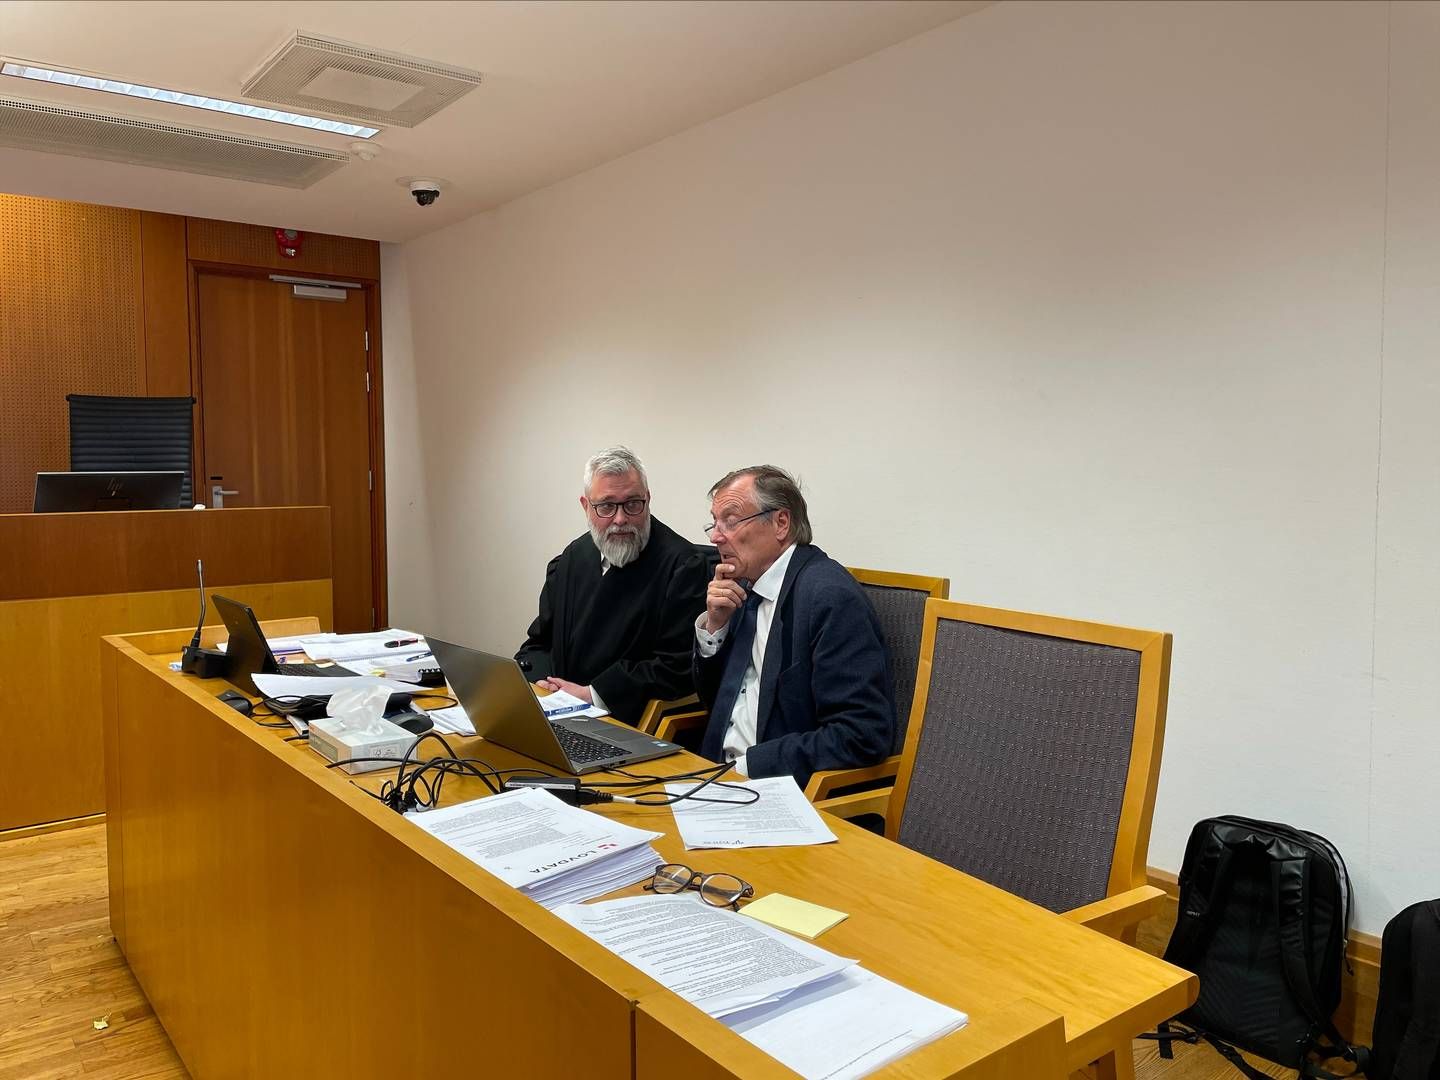 OMKAMP: Helge Tryti (t.h.) sammen med sin advokat Harald Holm Glad under rettssaken i tingretten i april. Nå er ankeforhandlingen berammet. | Foto: Stian Olsen/AdvokatWatch